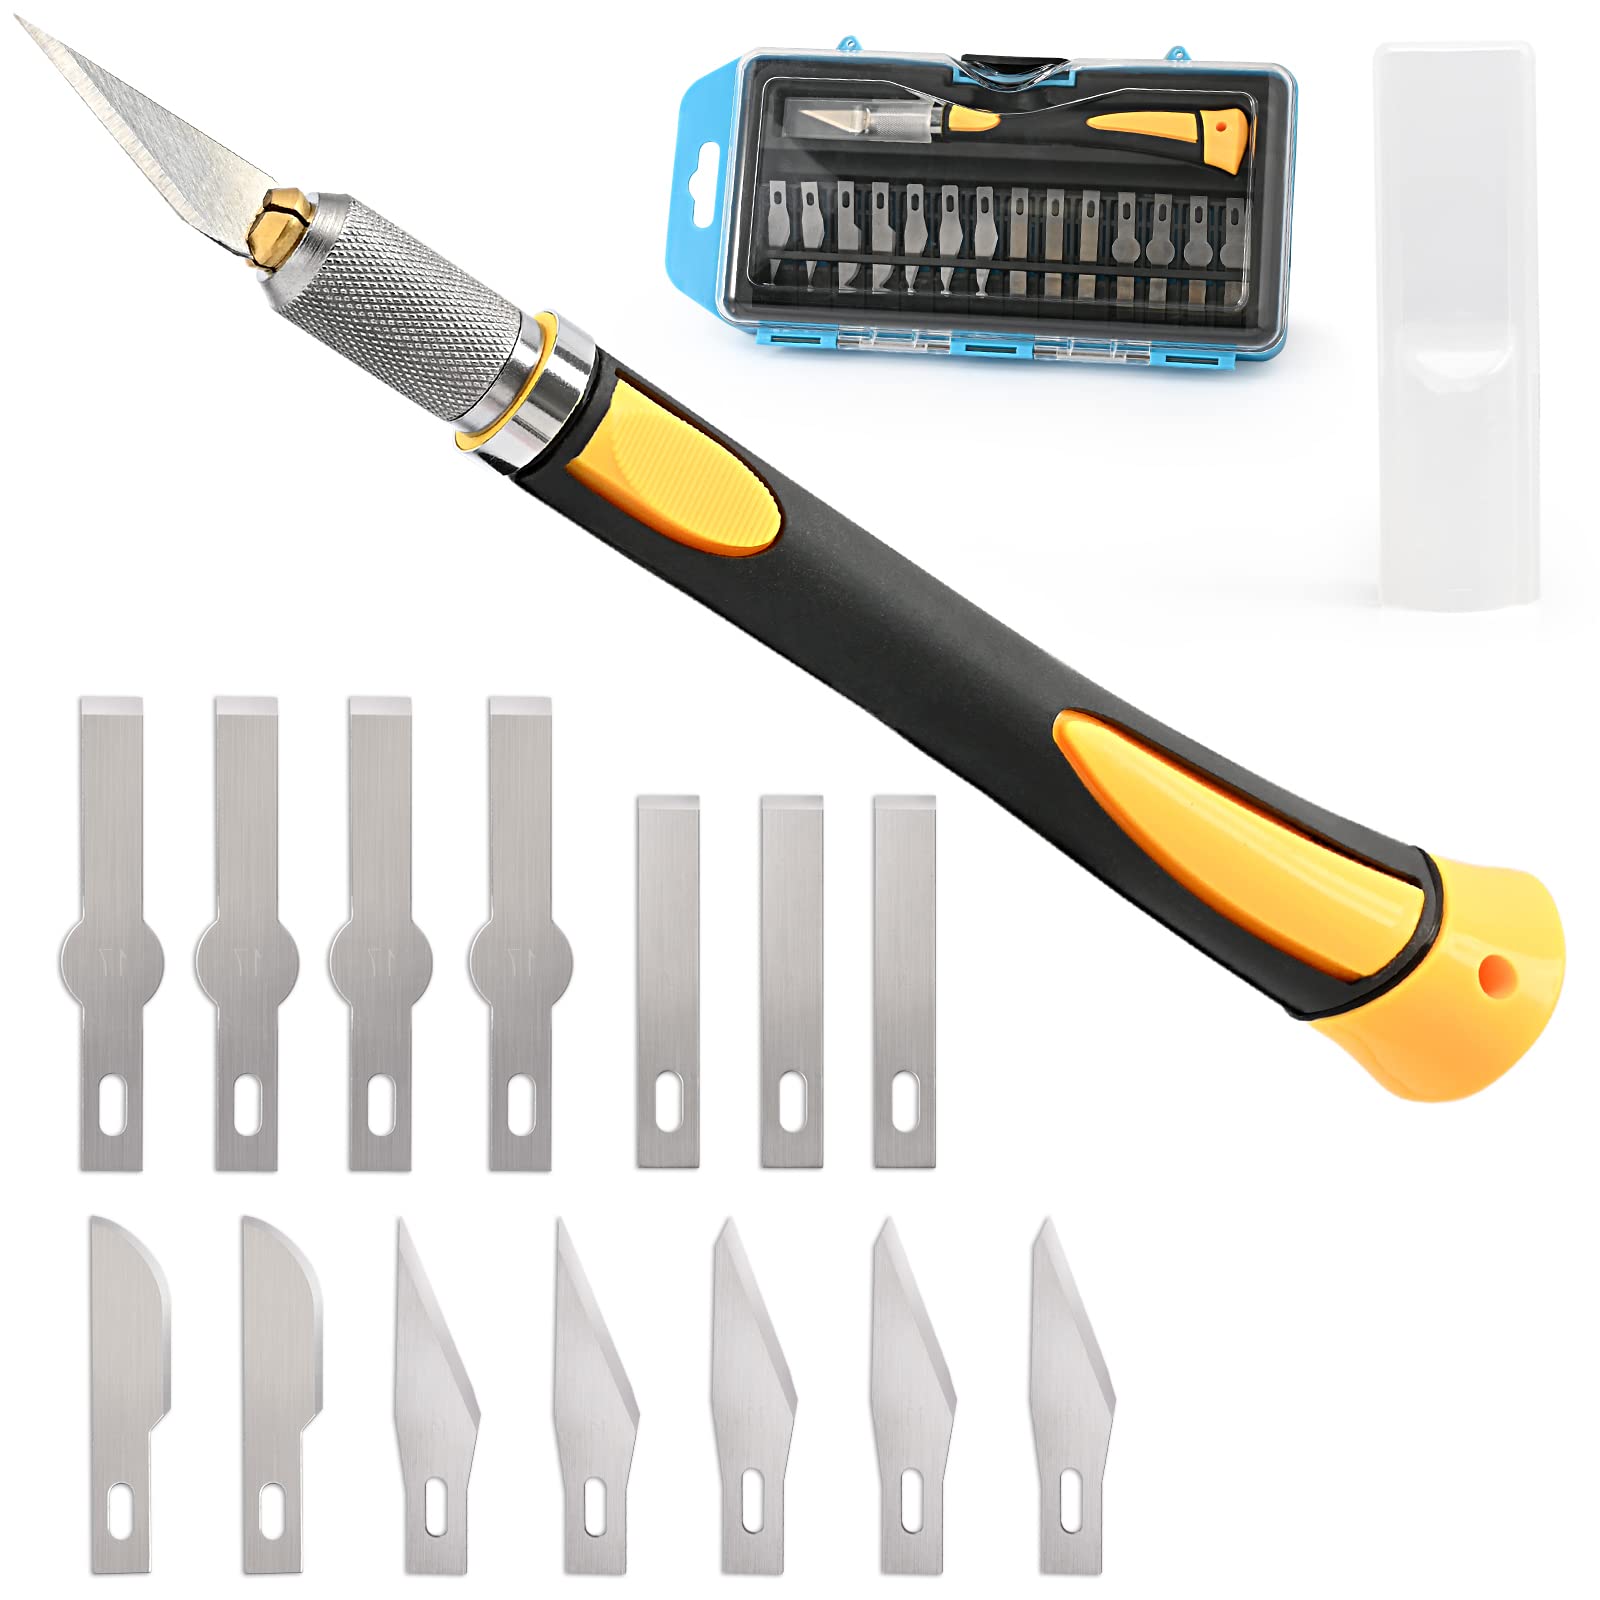 NEWISHTOOL Precision Hobby Knife Utility Exacto Knife Set with